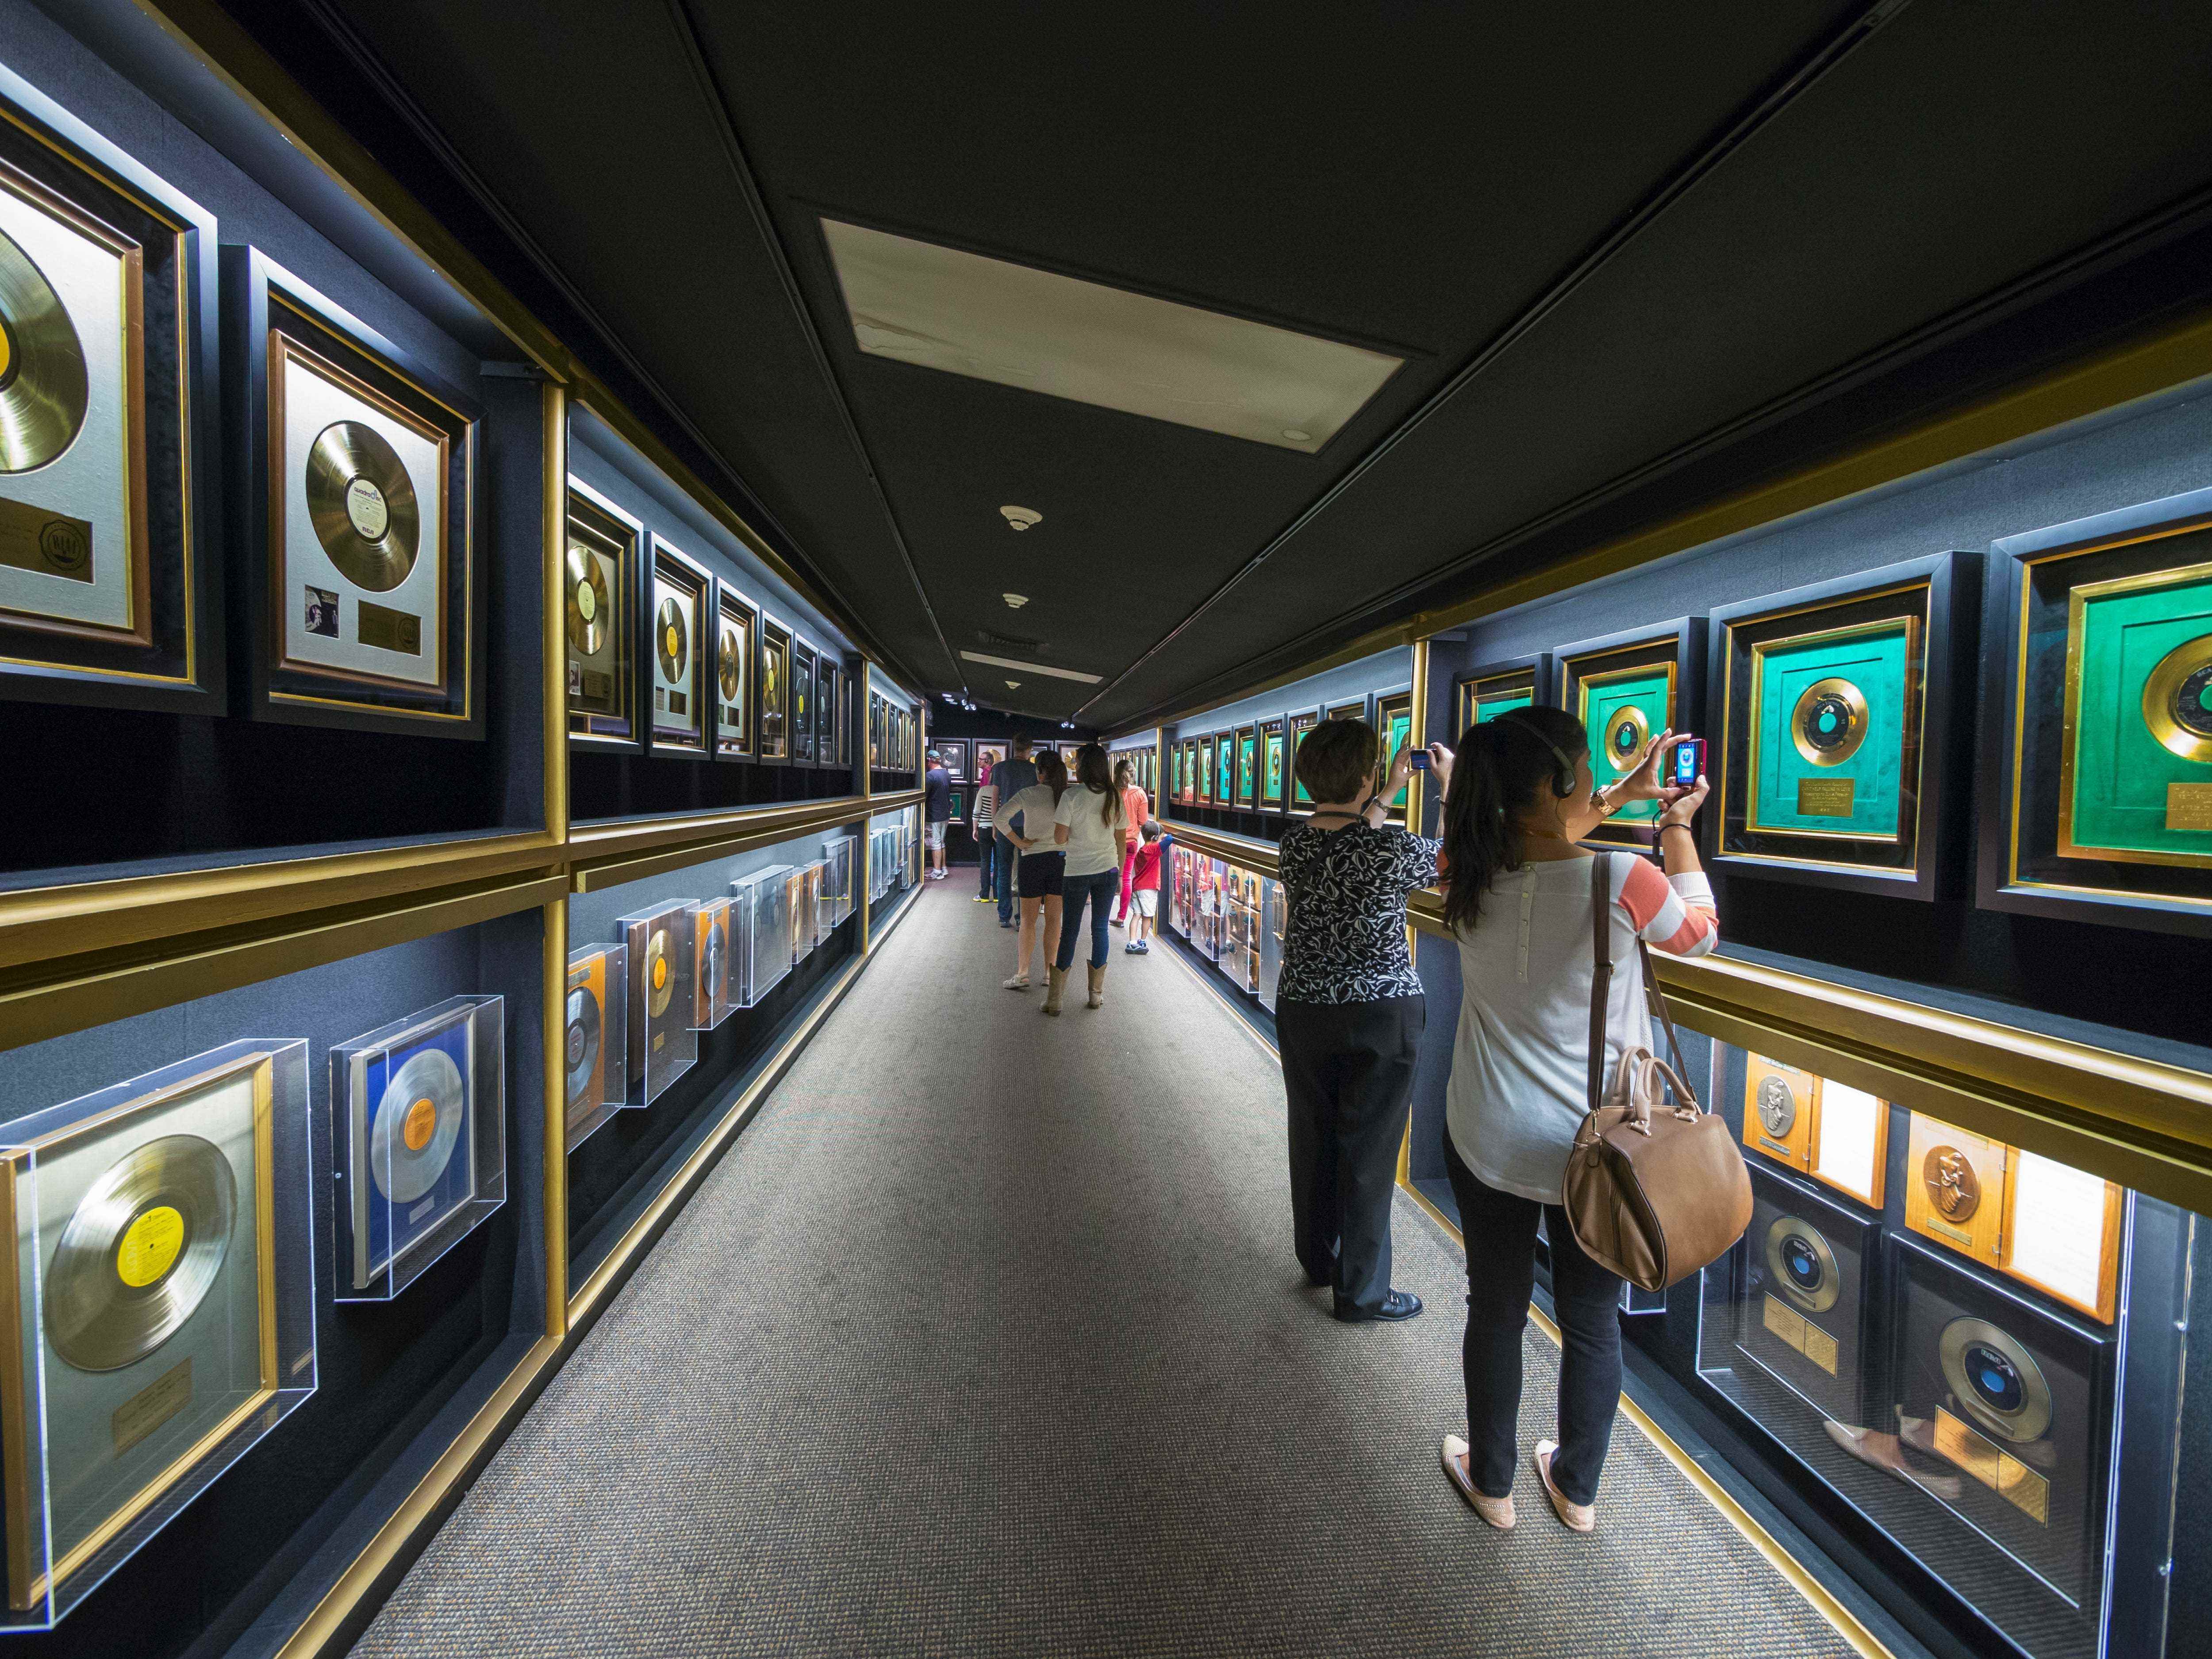 Elvis Presleys goldene Schallplatten in der Hall of Gold in Graceland ausgestellt.